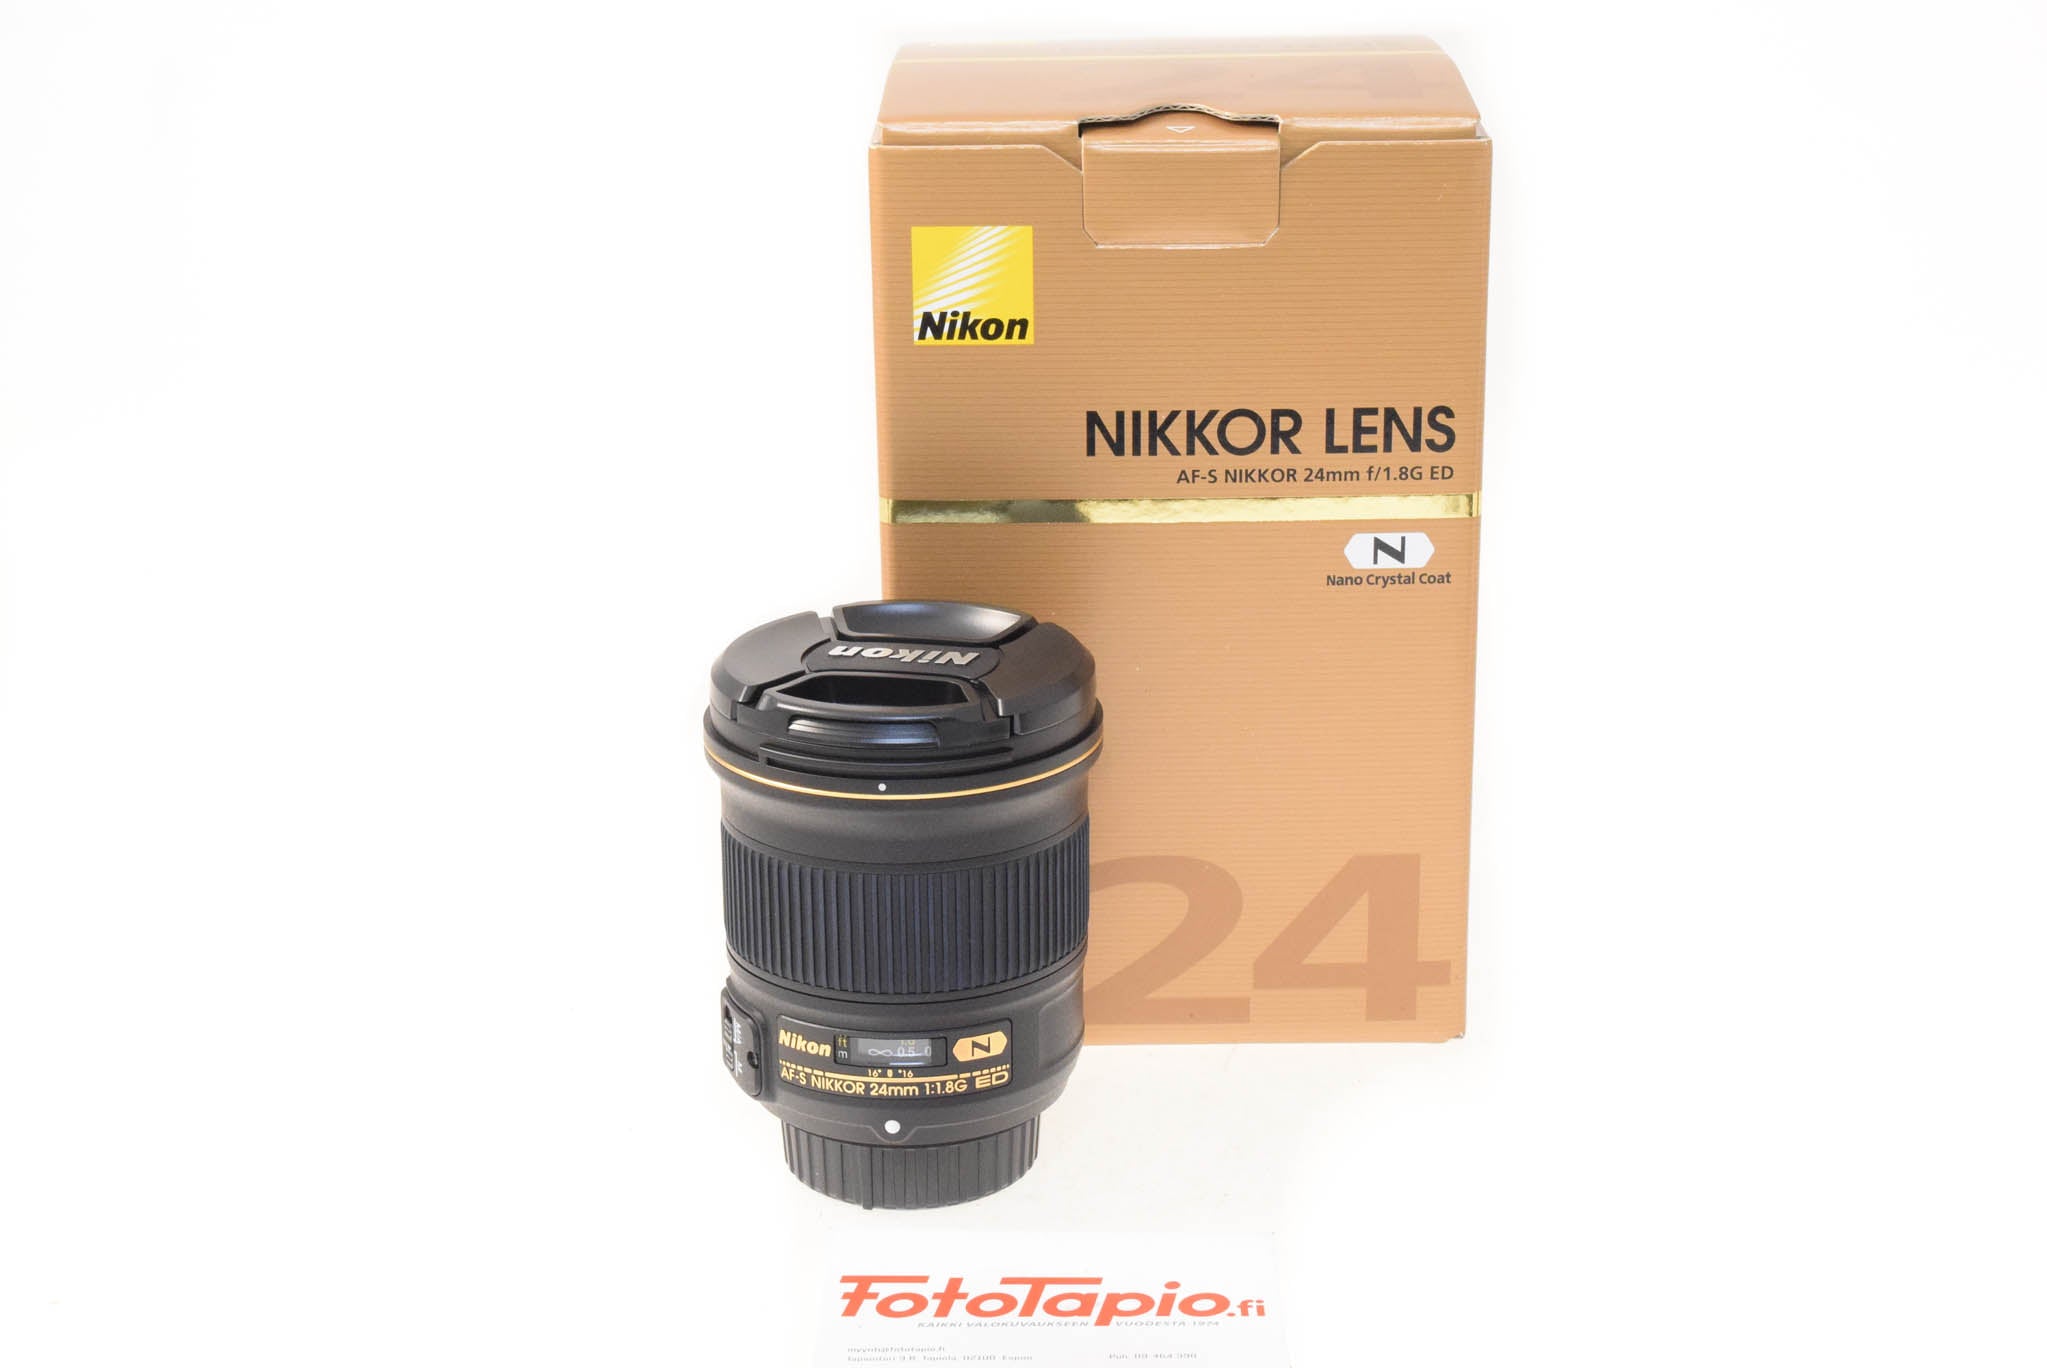 Nikon mm f1.8 G ED N AF S Nikkor – Kamerastore